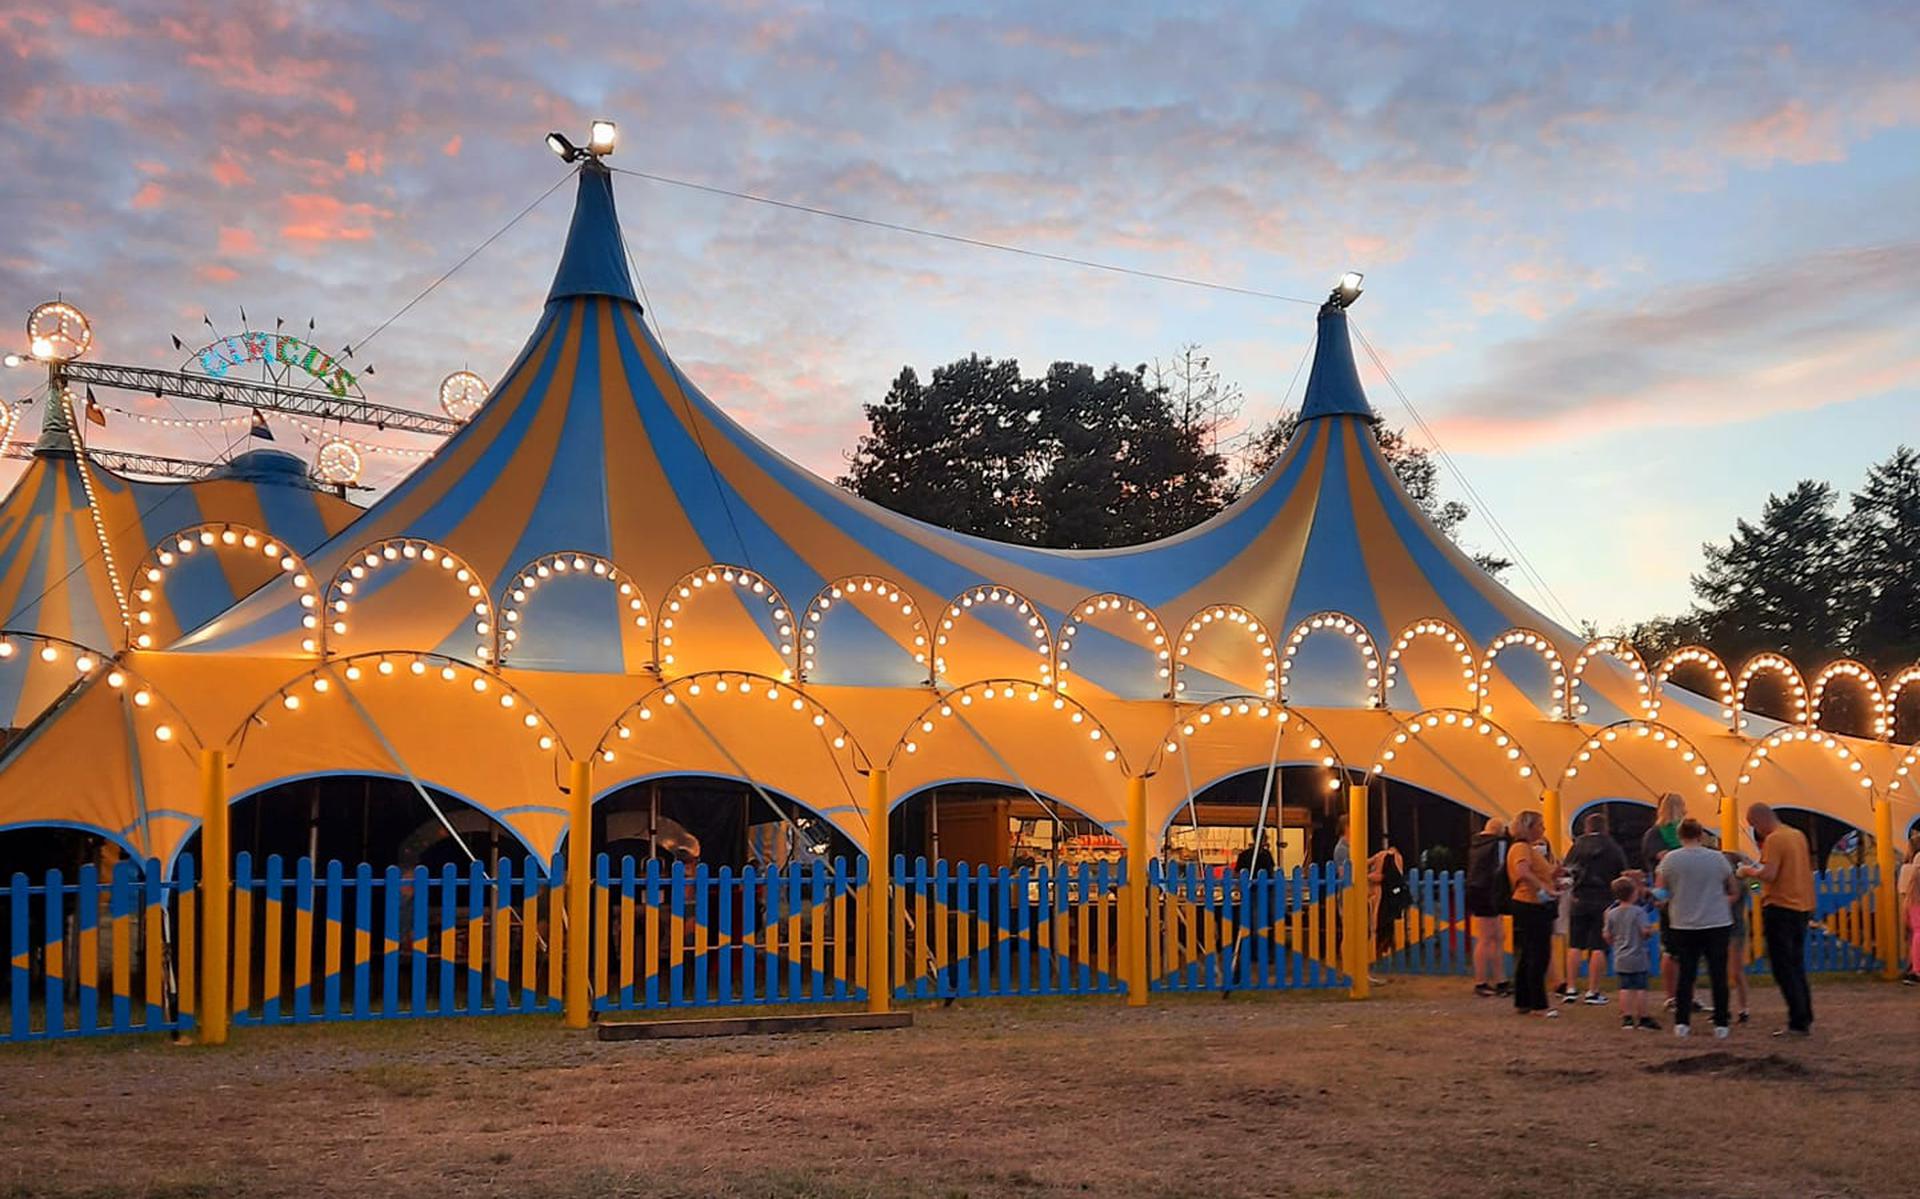 De tent van Circus Renz International. 